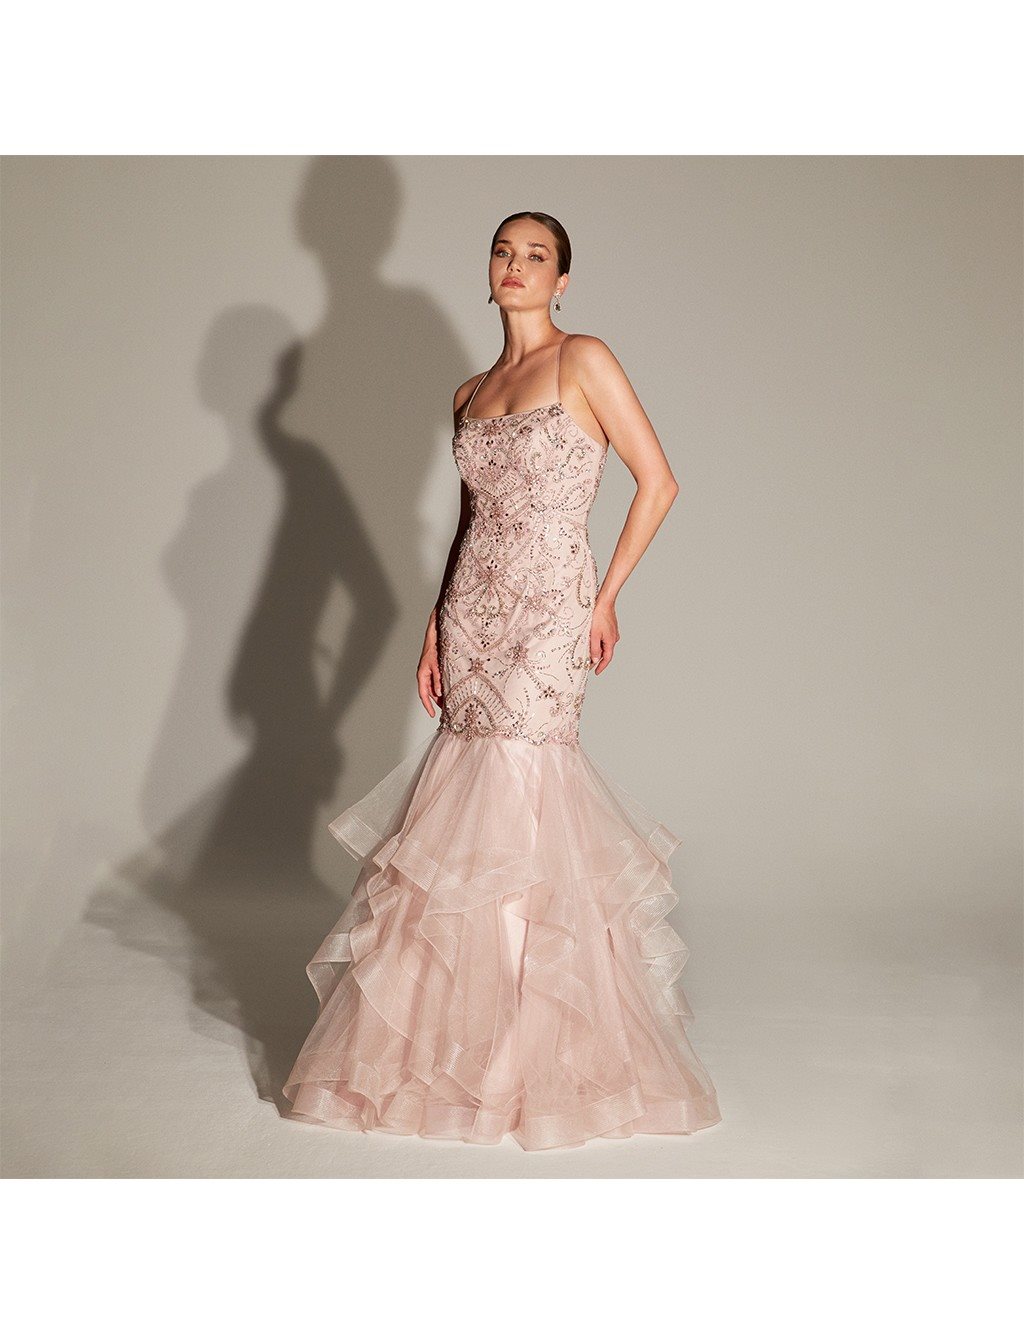 TIARA Skirt Tulle Detailed Fish Form Evening Dress B20 26169 Pink